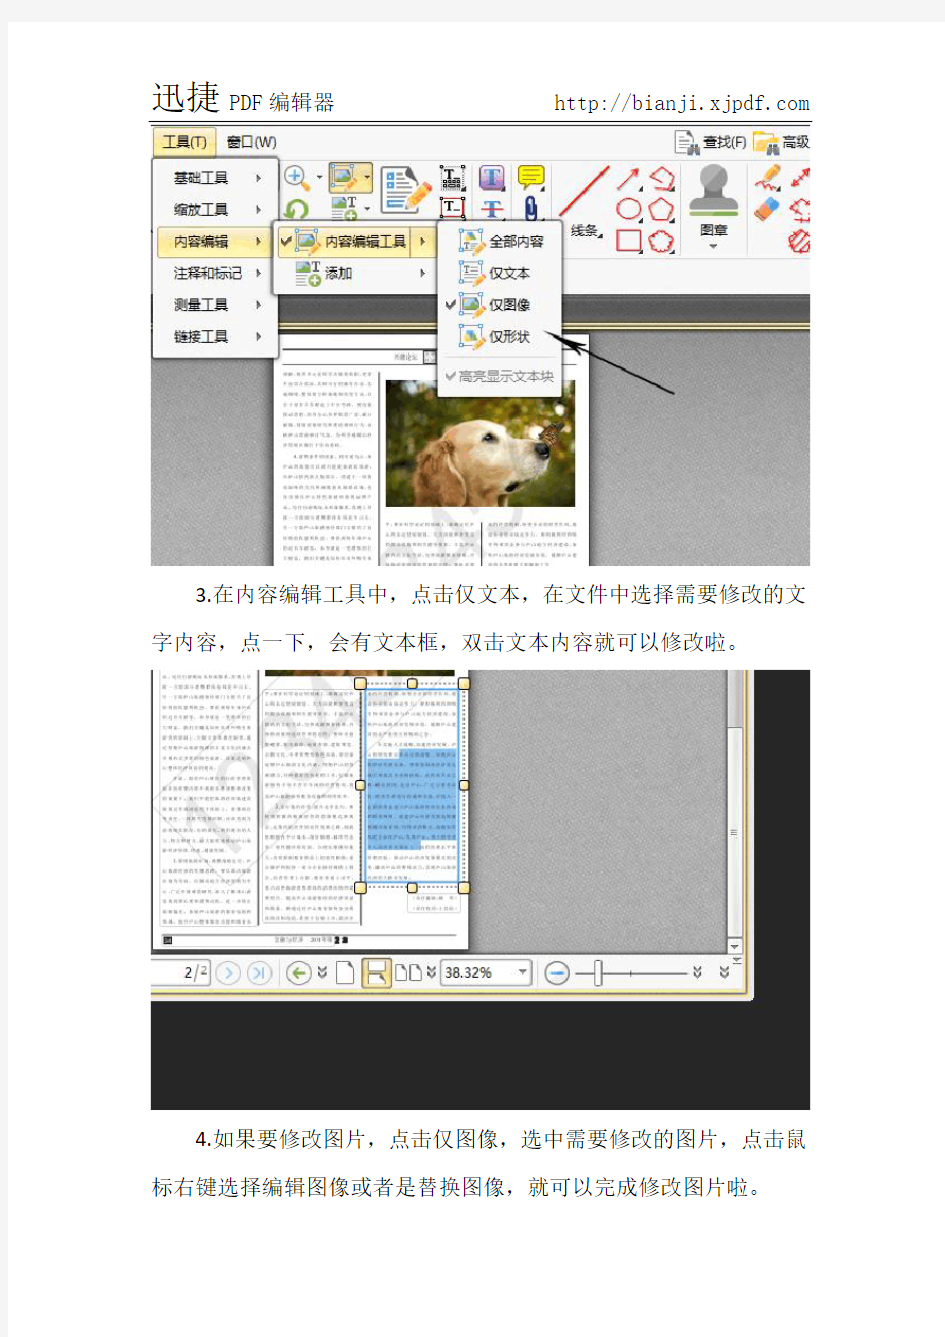 如何用PDF编辑工具修改文字和图片